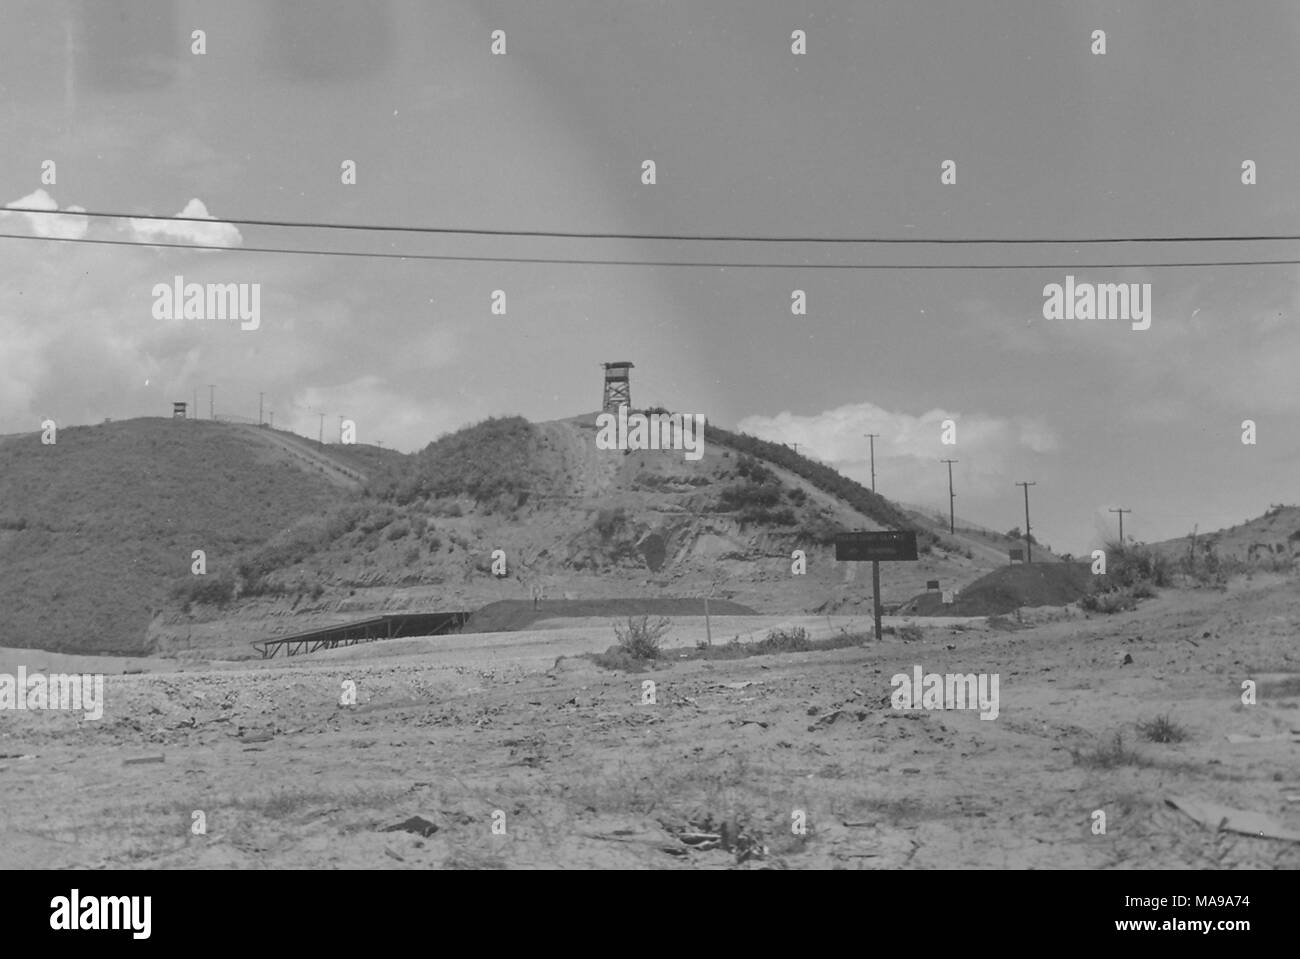 Photographie noir et blanc, montrant un paysage rocheux avec une route et ramada dans le plan intermédiaire, et deux collines en arrière-plan, chacune avec un poste d'observation en bois sur des échafaudages, photographié au Vietnam pendant la guerre du Vietnam (1955-1975), 1968. () Banque D'Images